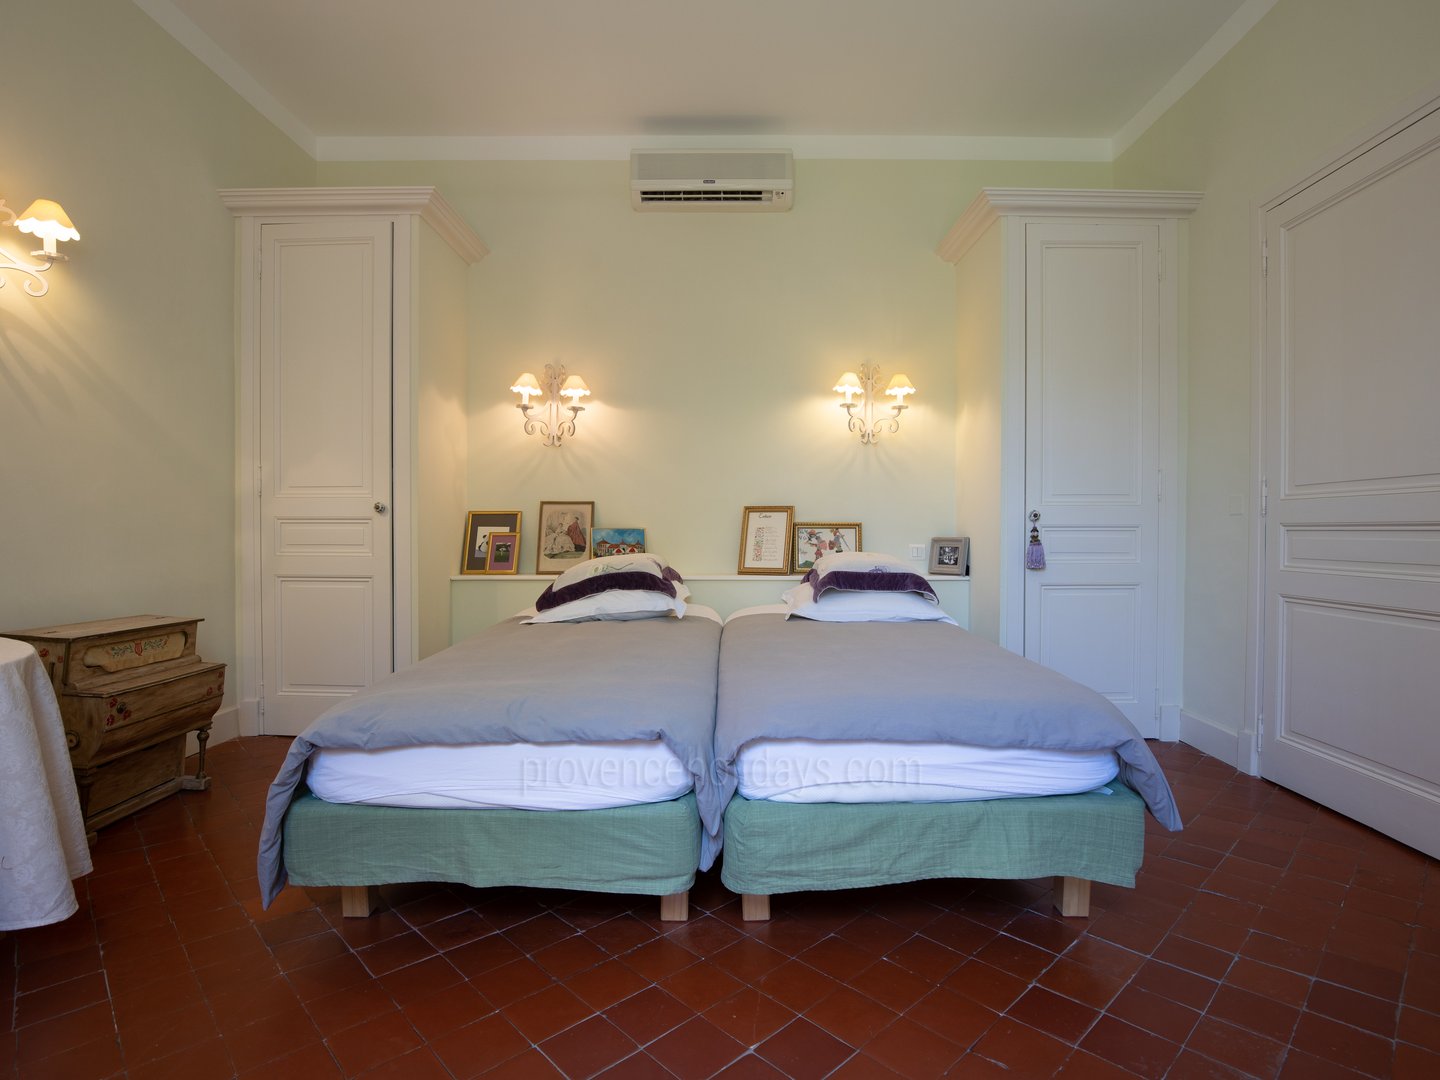 36 - Le Domaine des Cyprès: Villa: Bedroom